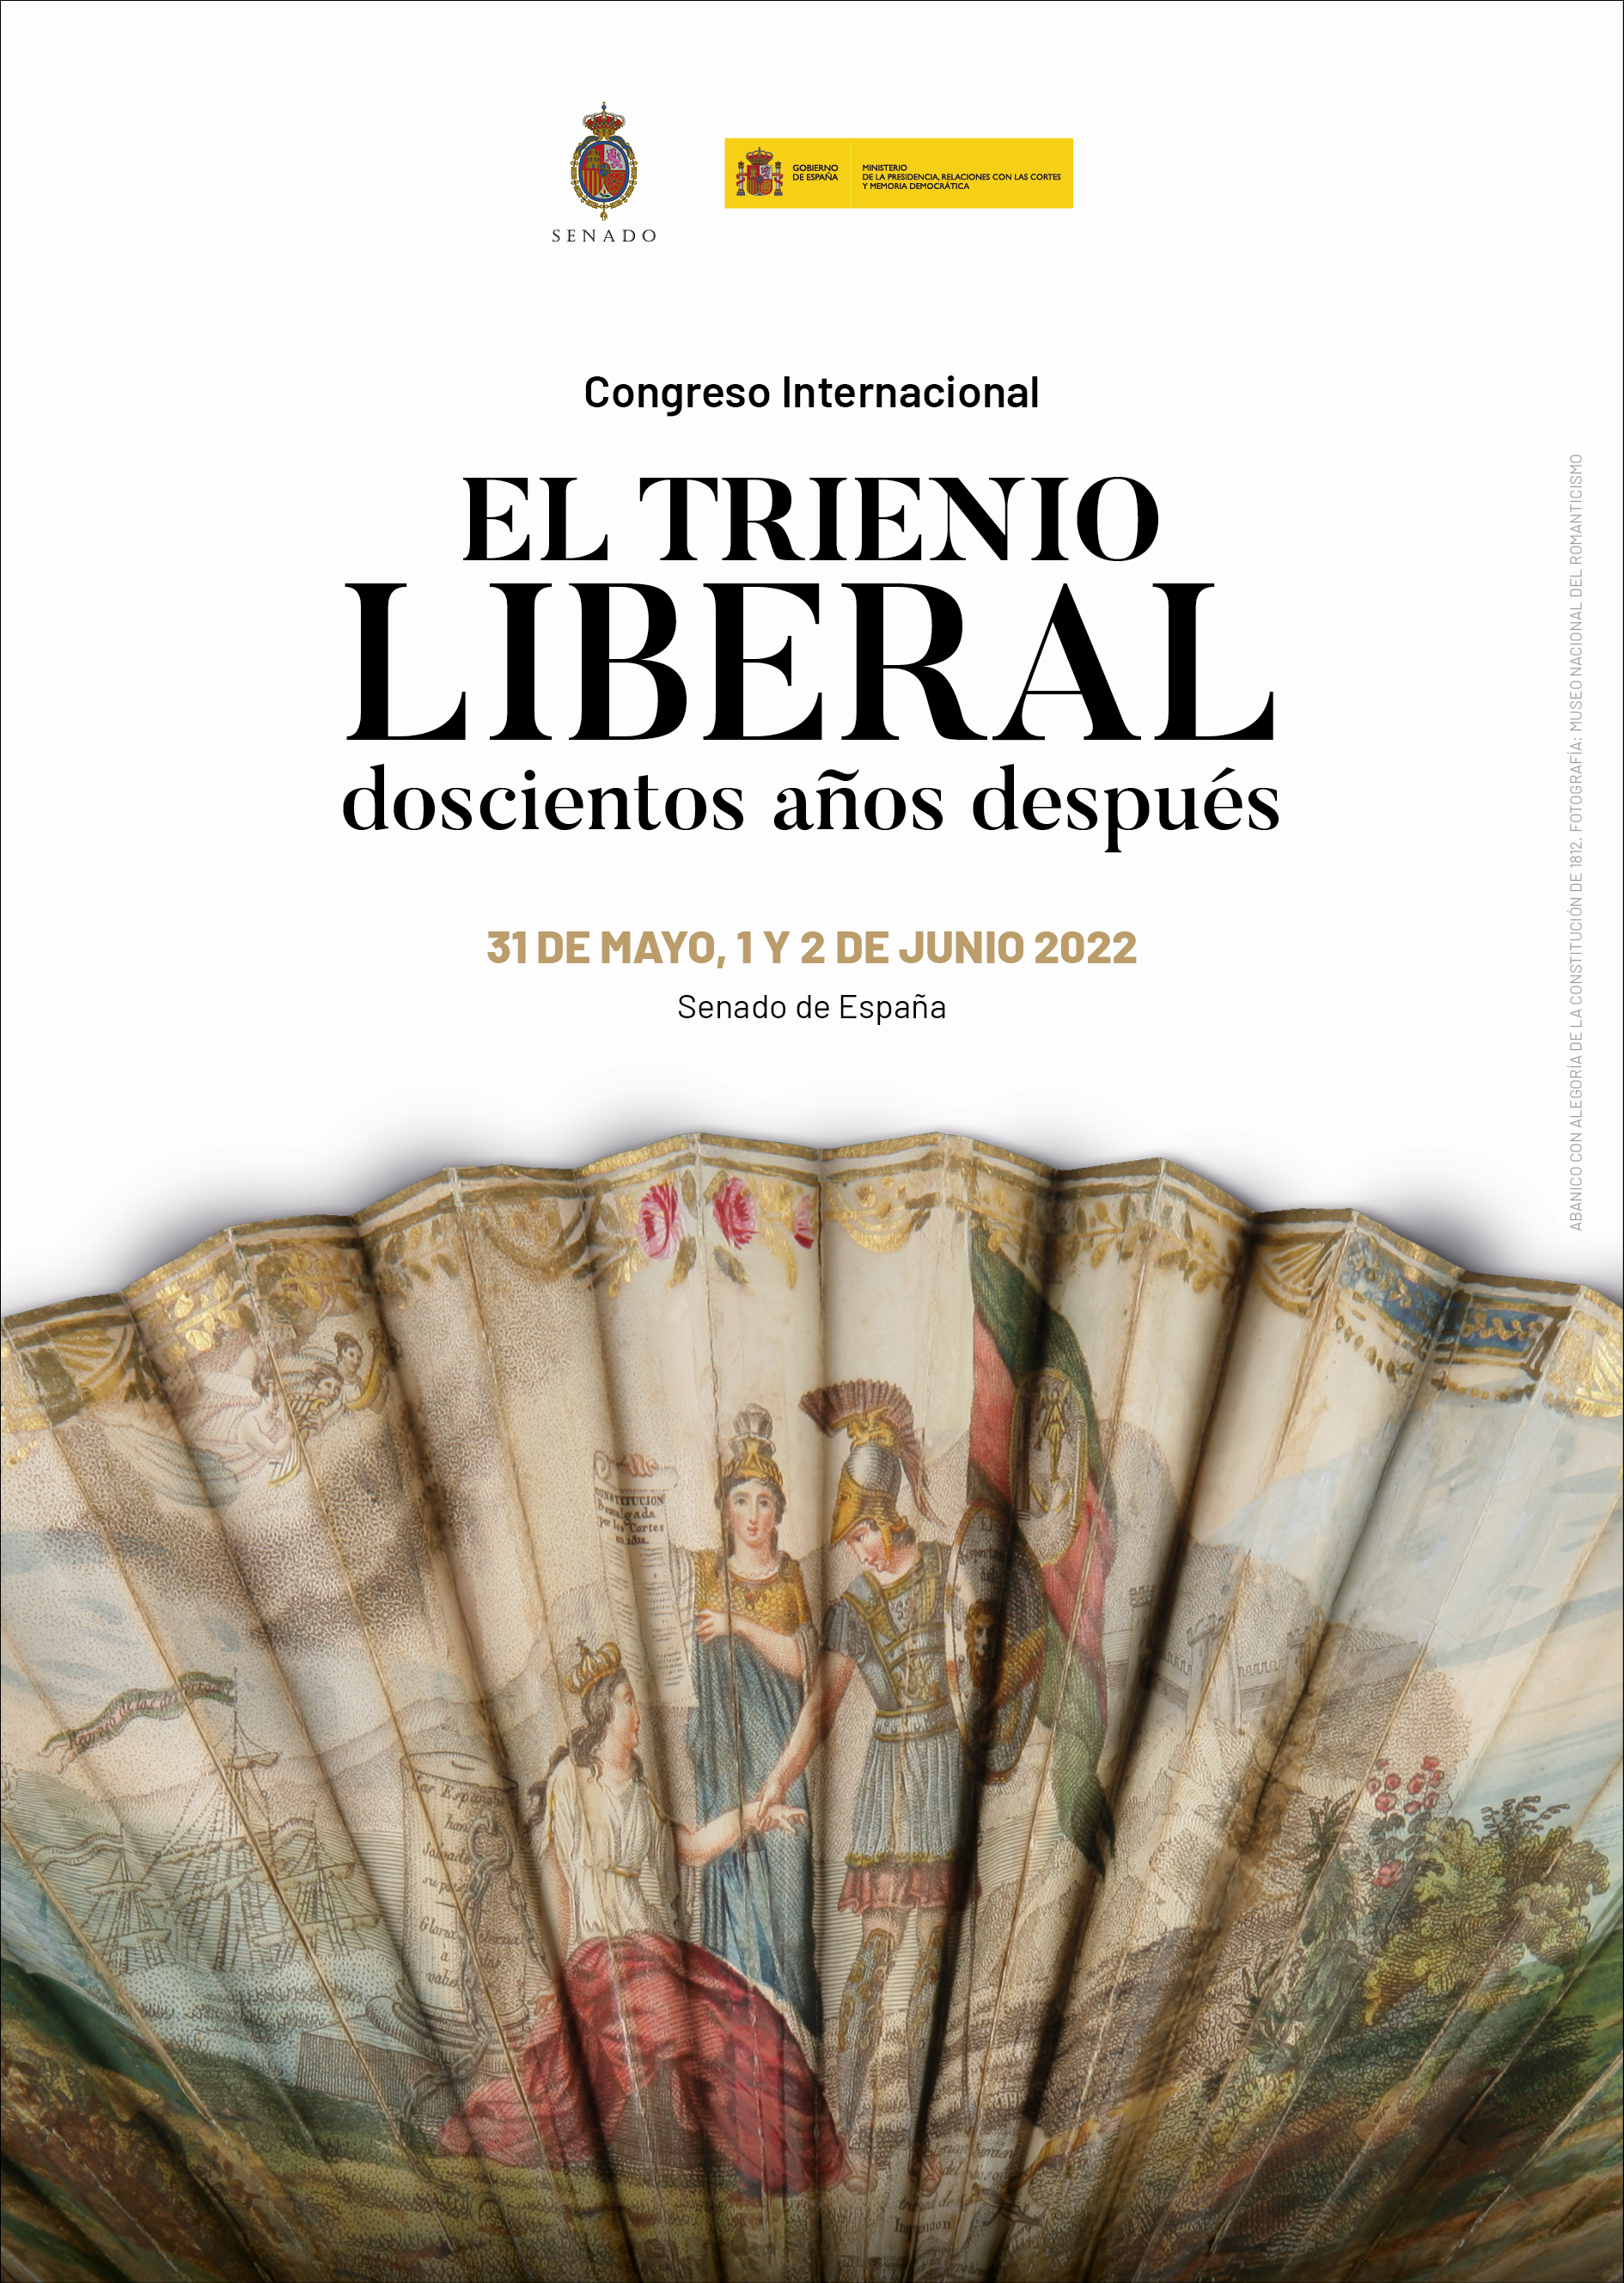 El Congreso Internacional «El Trienio Liberal doscientos años después» ahondará en los orígenes del sistema constitucional y sus ecos en España y el mundo